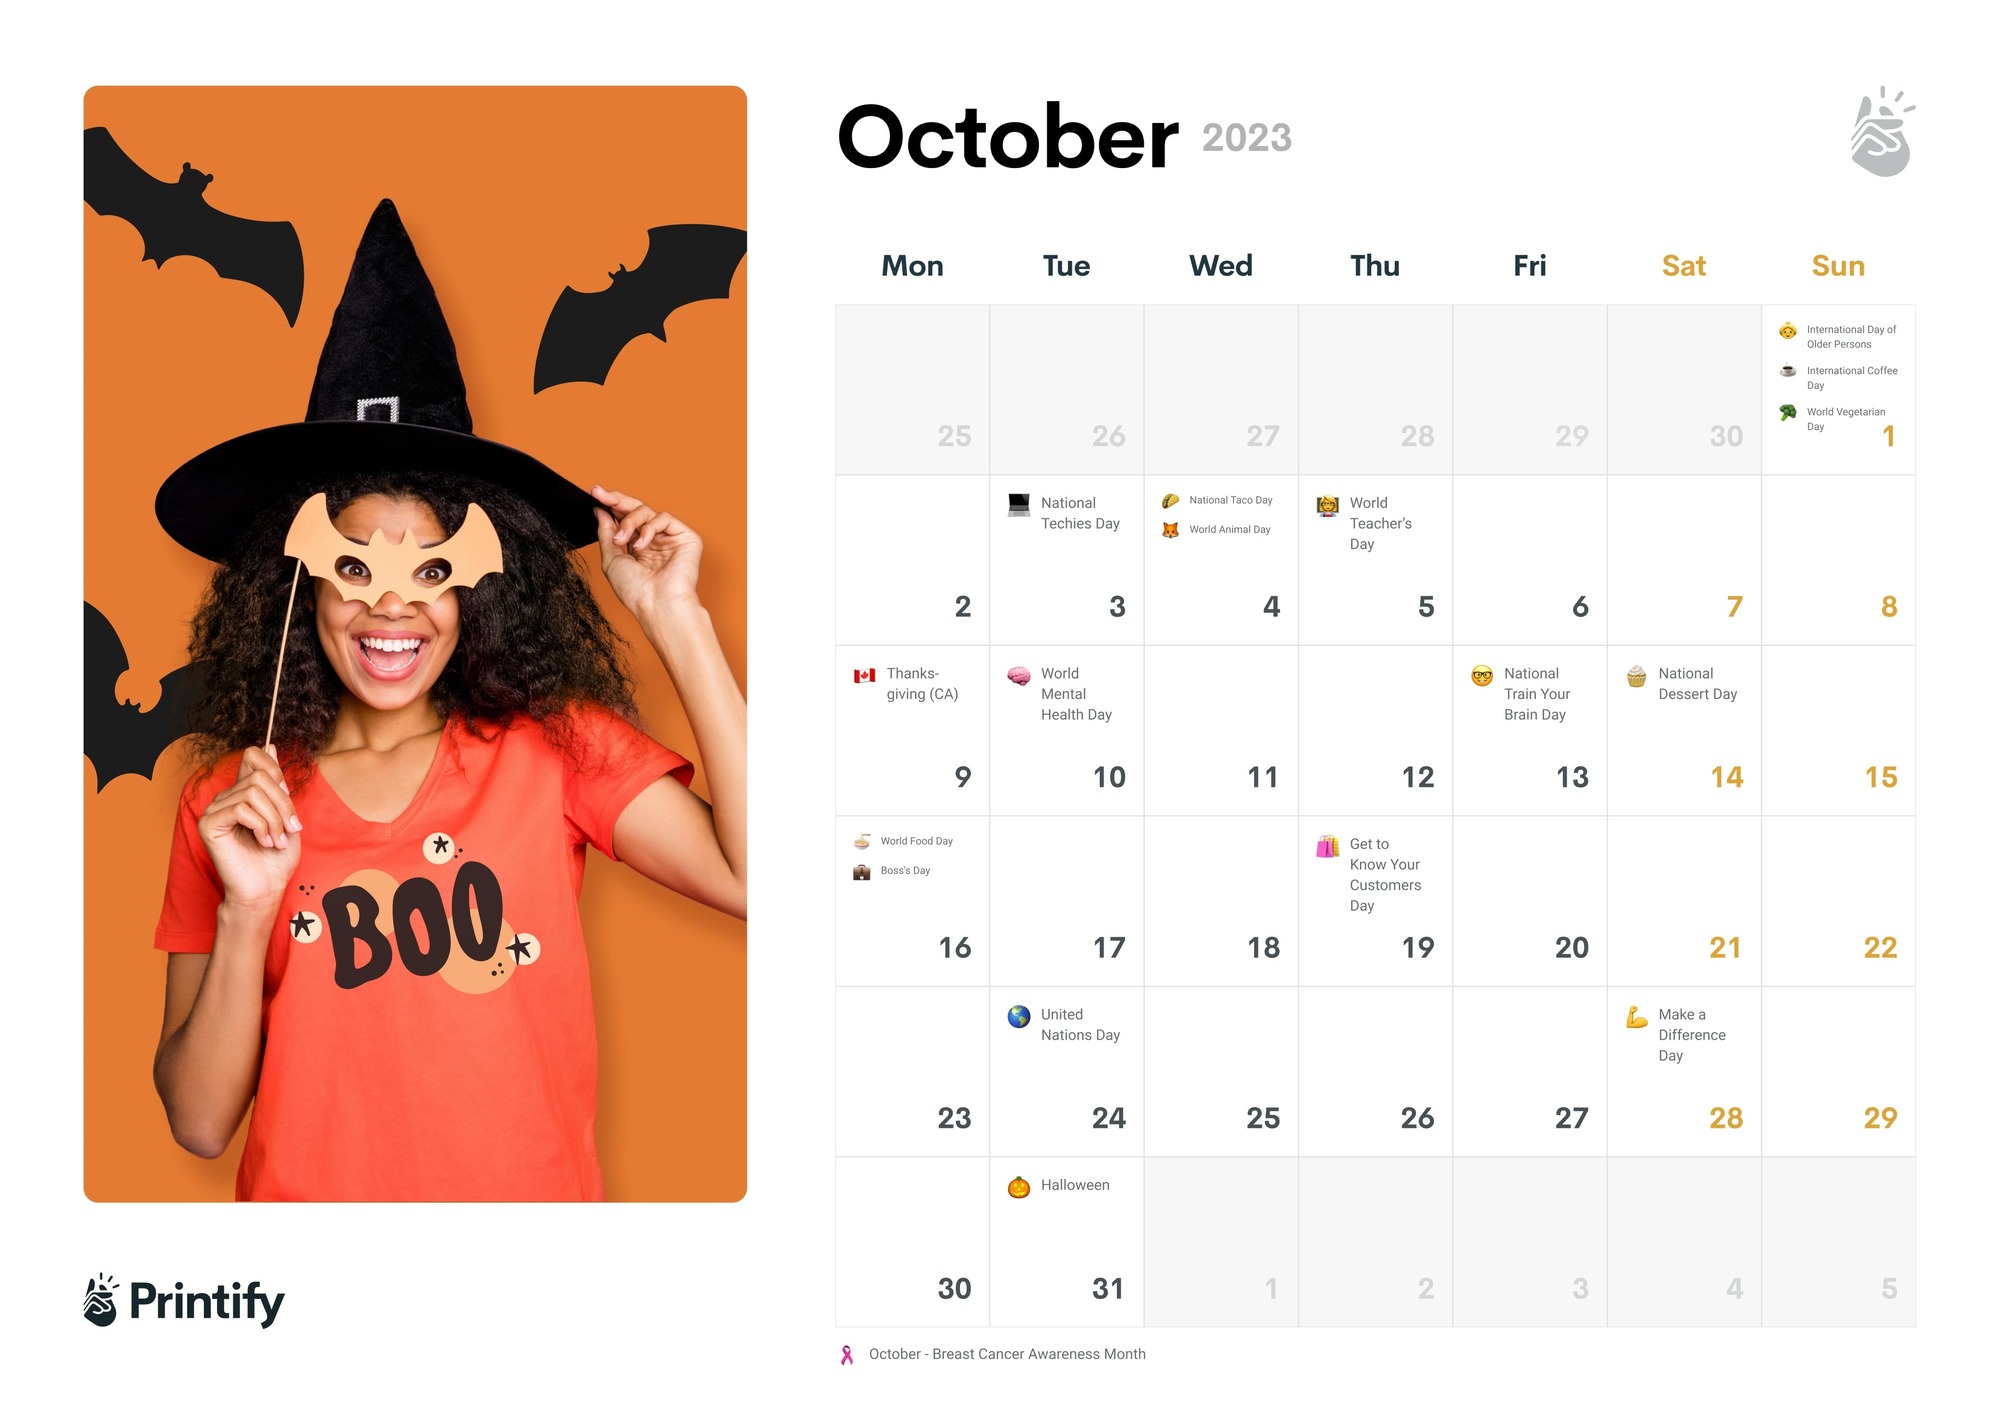 Marketing Calendar 2022 - October